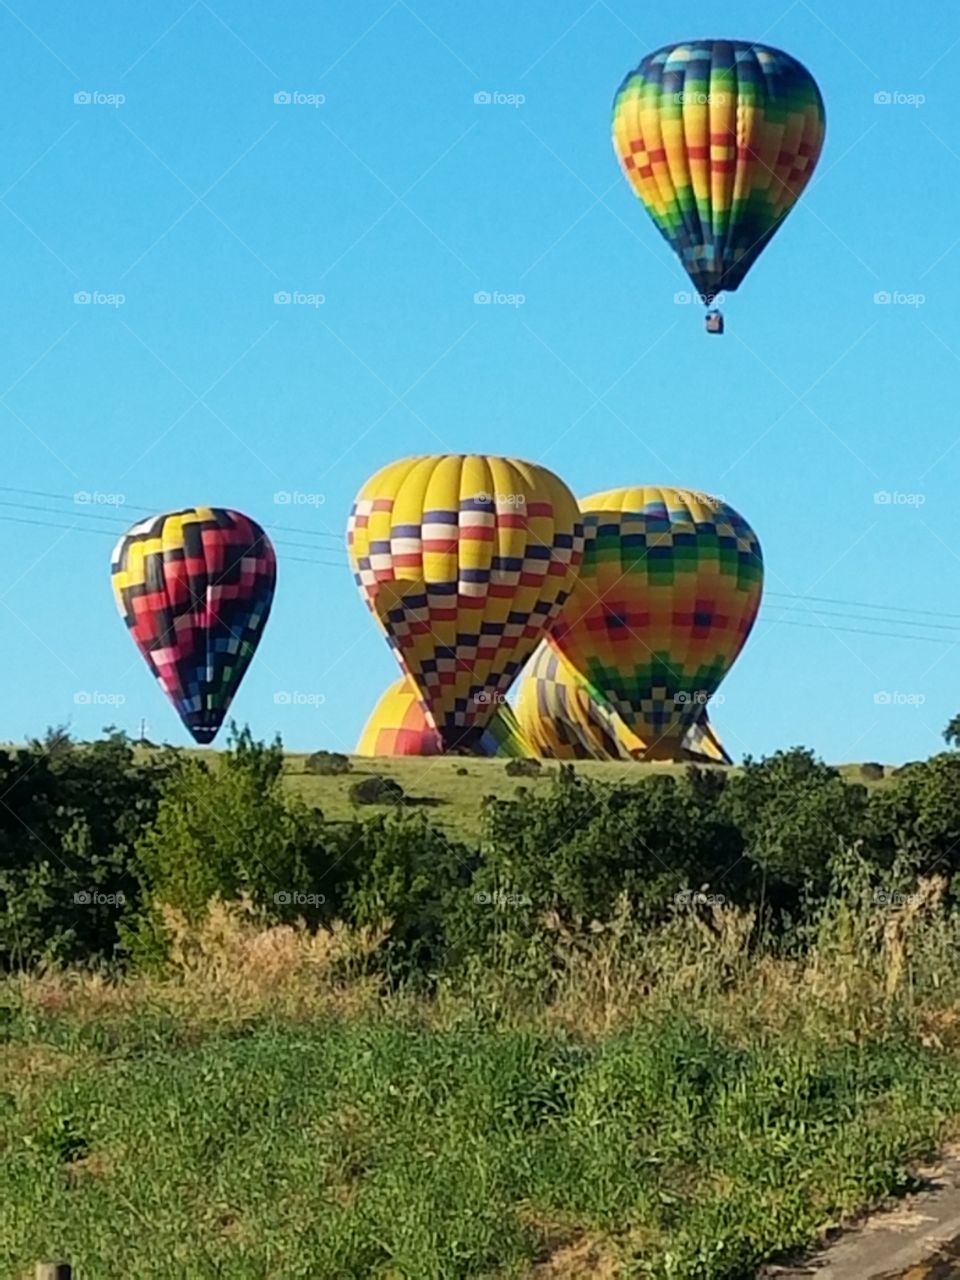 Napa Valley Hot Air Balloon 2.